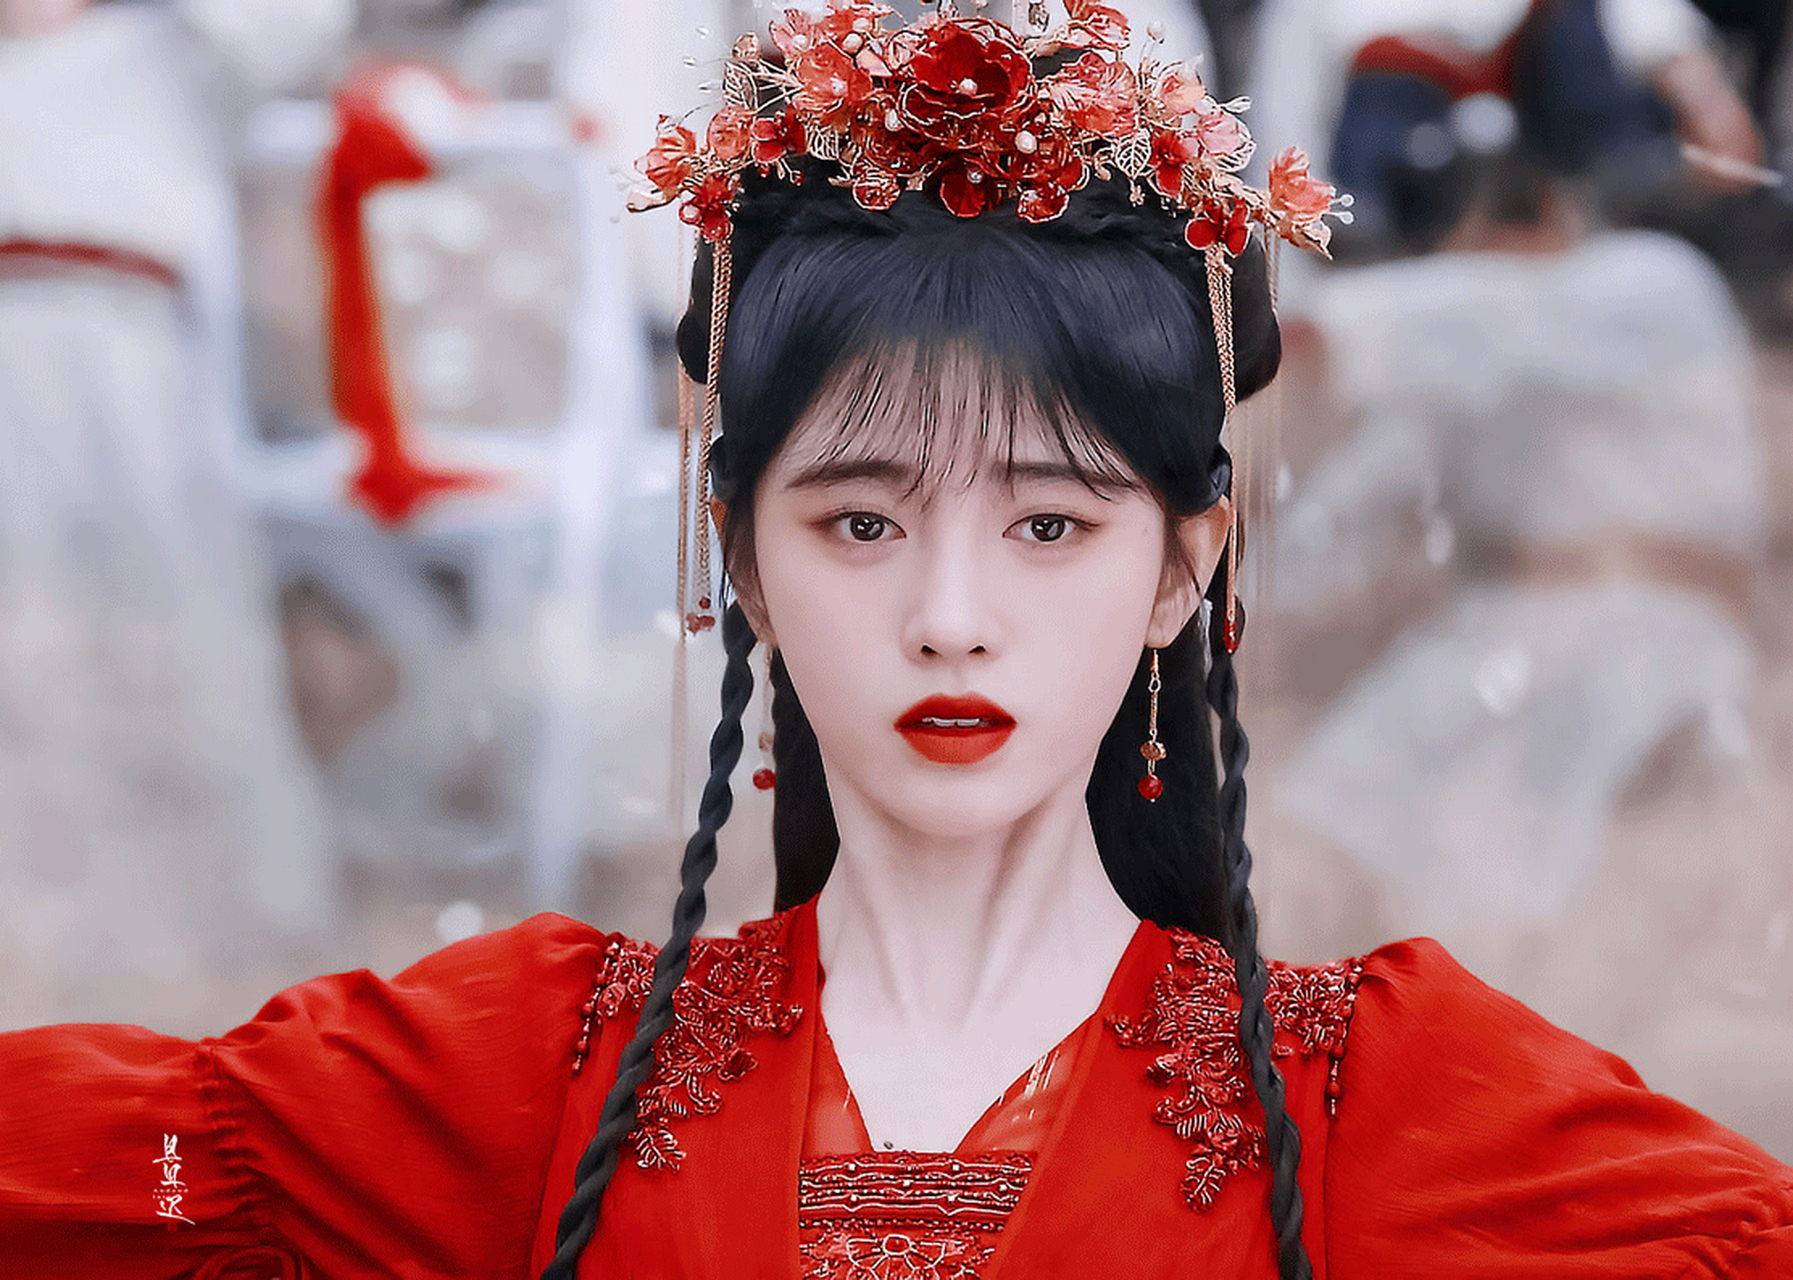 鞠婧祎《花戎》这套红衣造型超美,你们觉得如何?